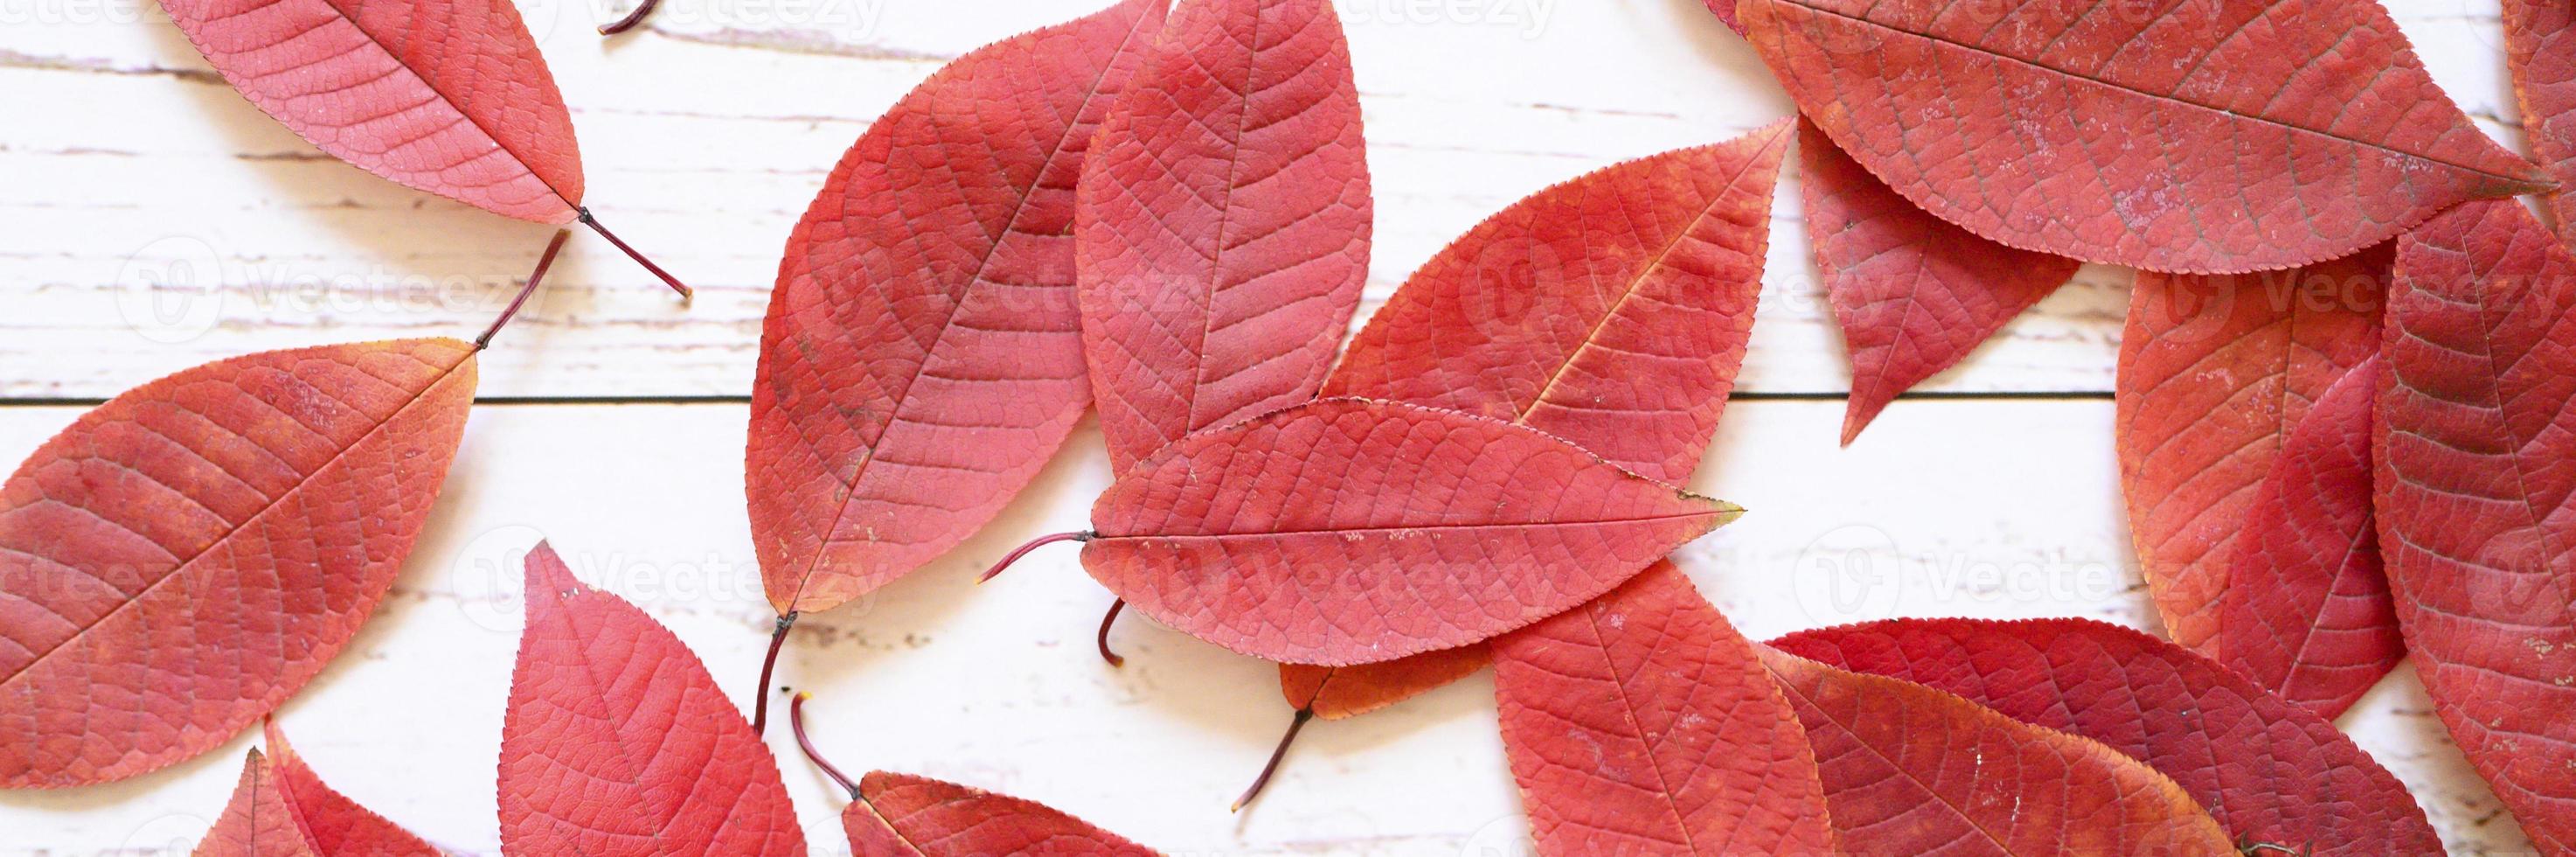 verschillende rode herfst gevallen bladeren op een lichte houten plank achtergrond foto